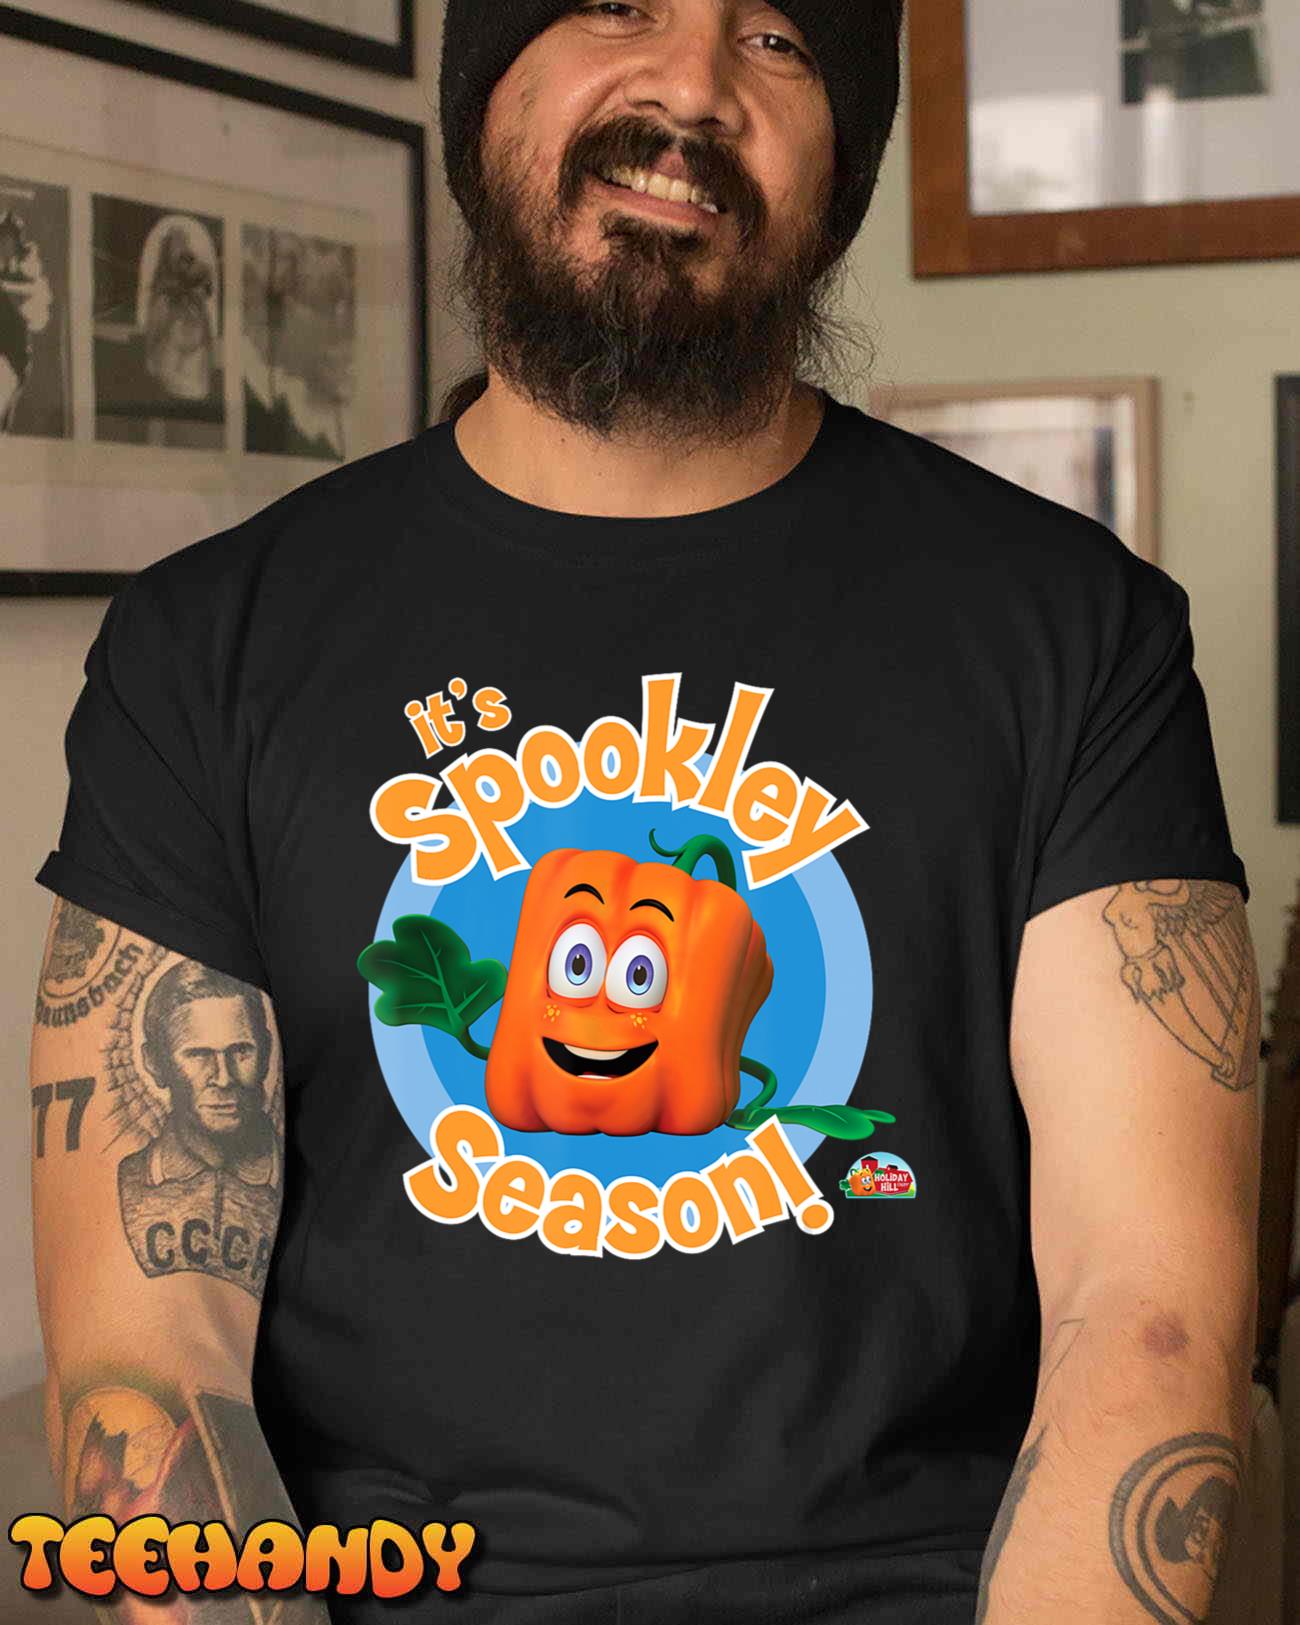 Spookley the Square Pumpkin  It’s Spookley Season! T-Shirt